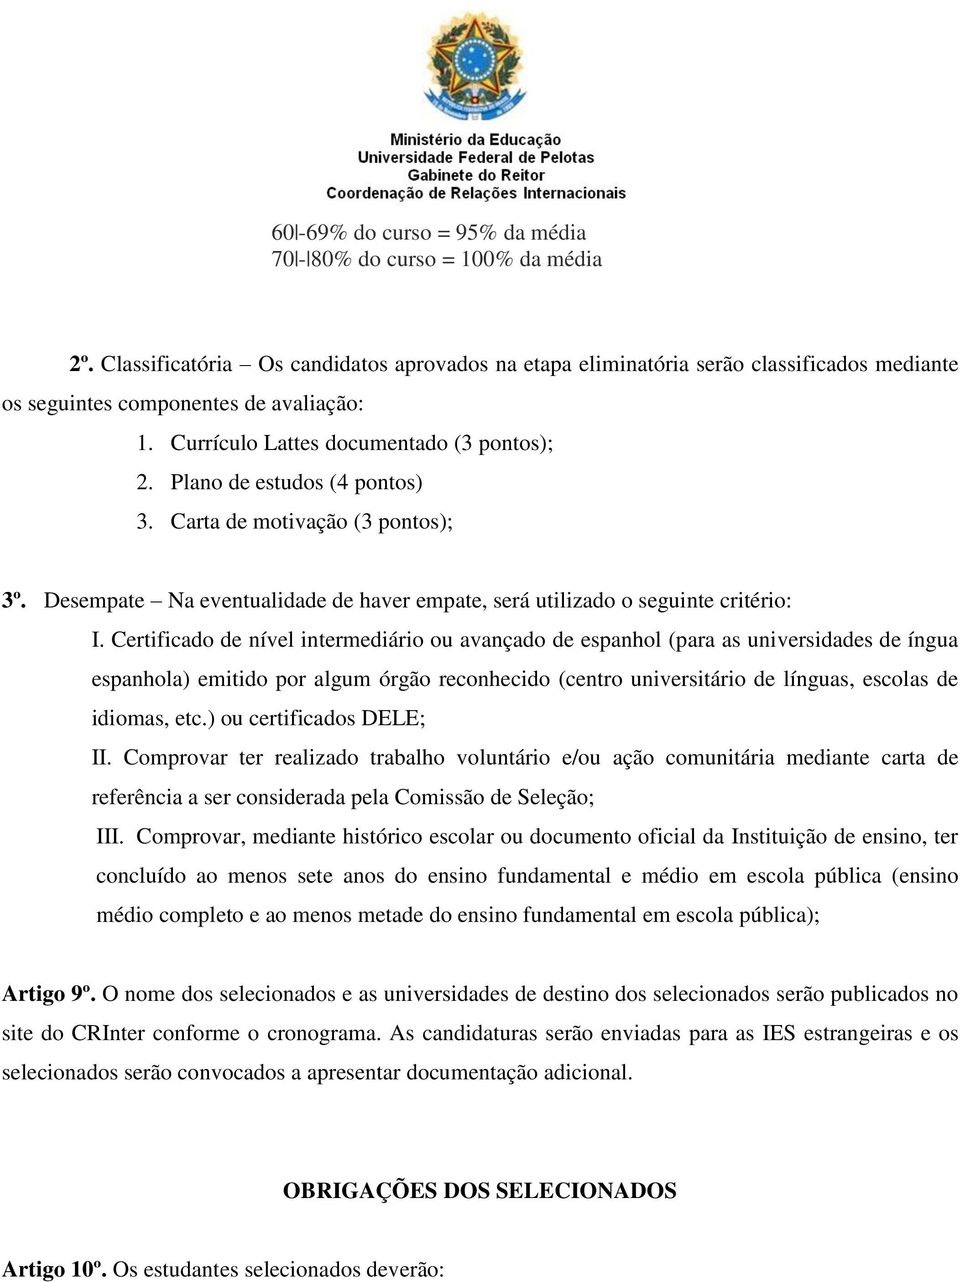 Certificado de nível intermediário ou avançado de espanhol (para as universidades de íngua espanhola) emitido por algum órgão reconhecido (centro universitário de línguas, escolas de idiomas, etc.